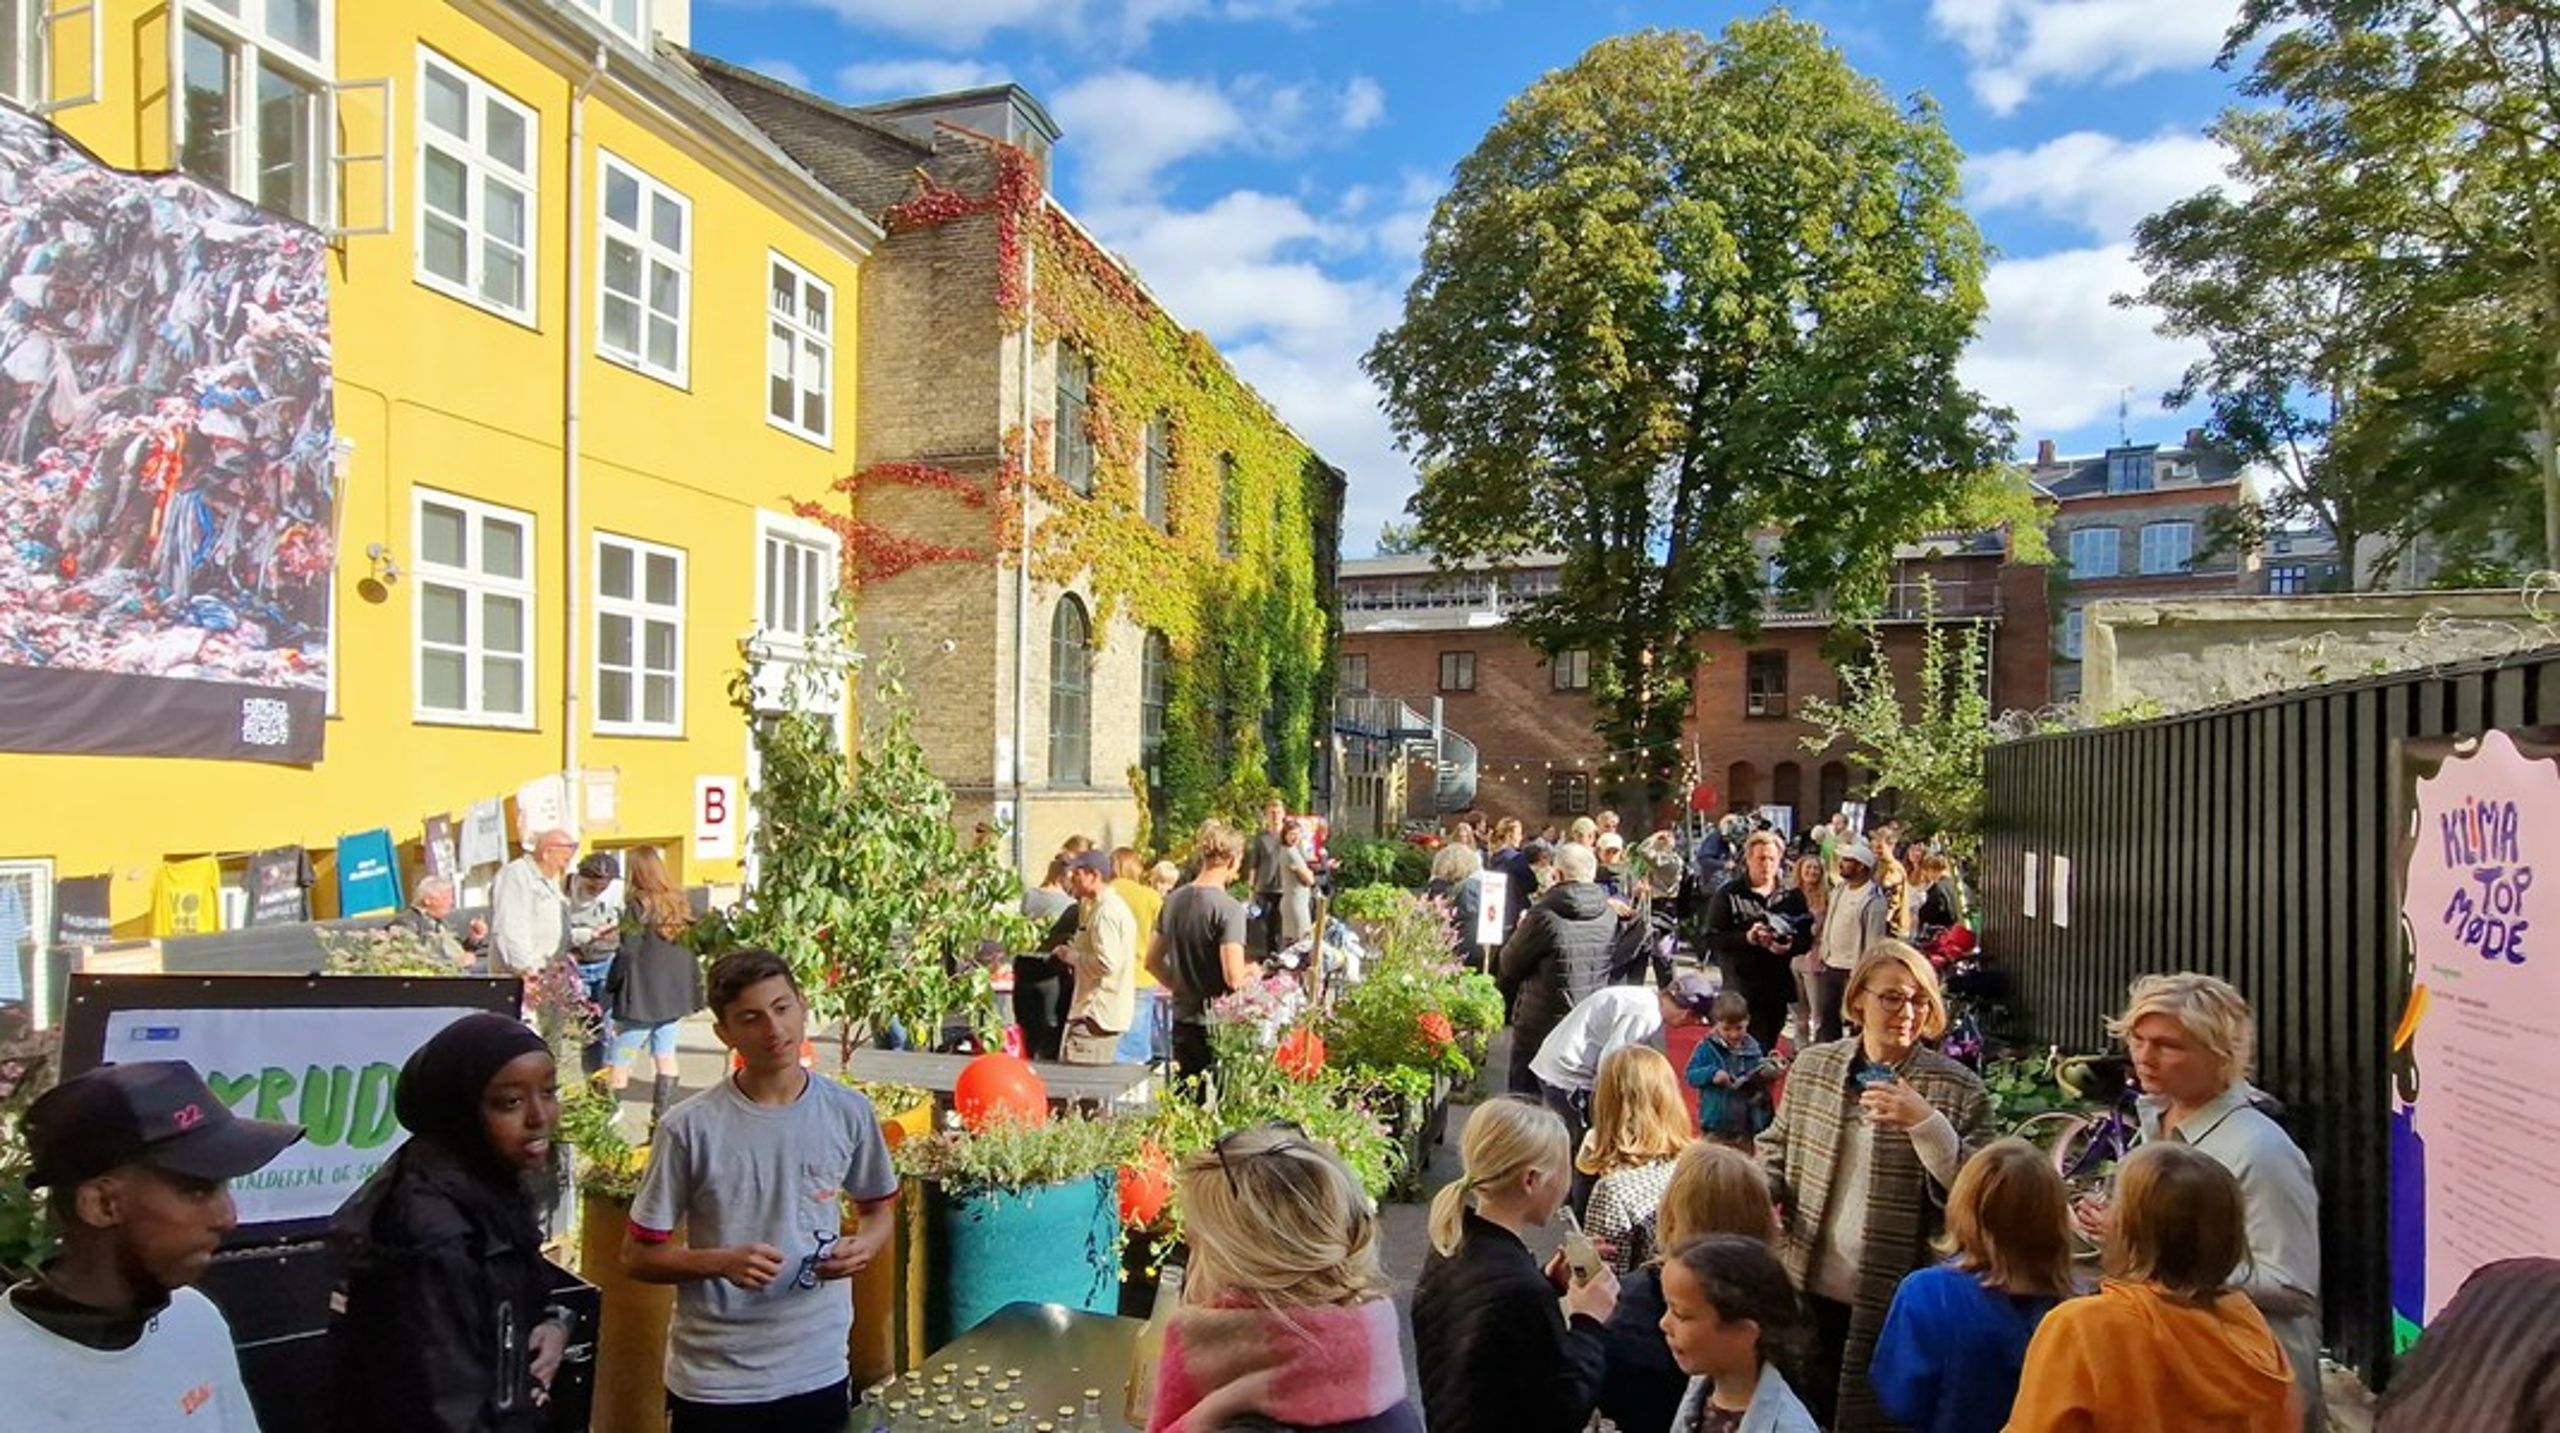 Lokale borgerdrevne initiativer bliver vigtige, hvis København skal lykkes med at komme i mål med sin klimaplan. Det var én af pointerne i Altinget Hovedstadens temadebat om hovedstadens kommende klimaplan.&nbsp;&nbsp;&nbsp;